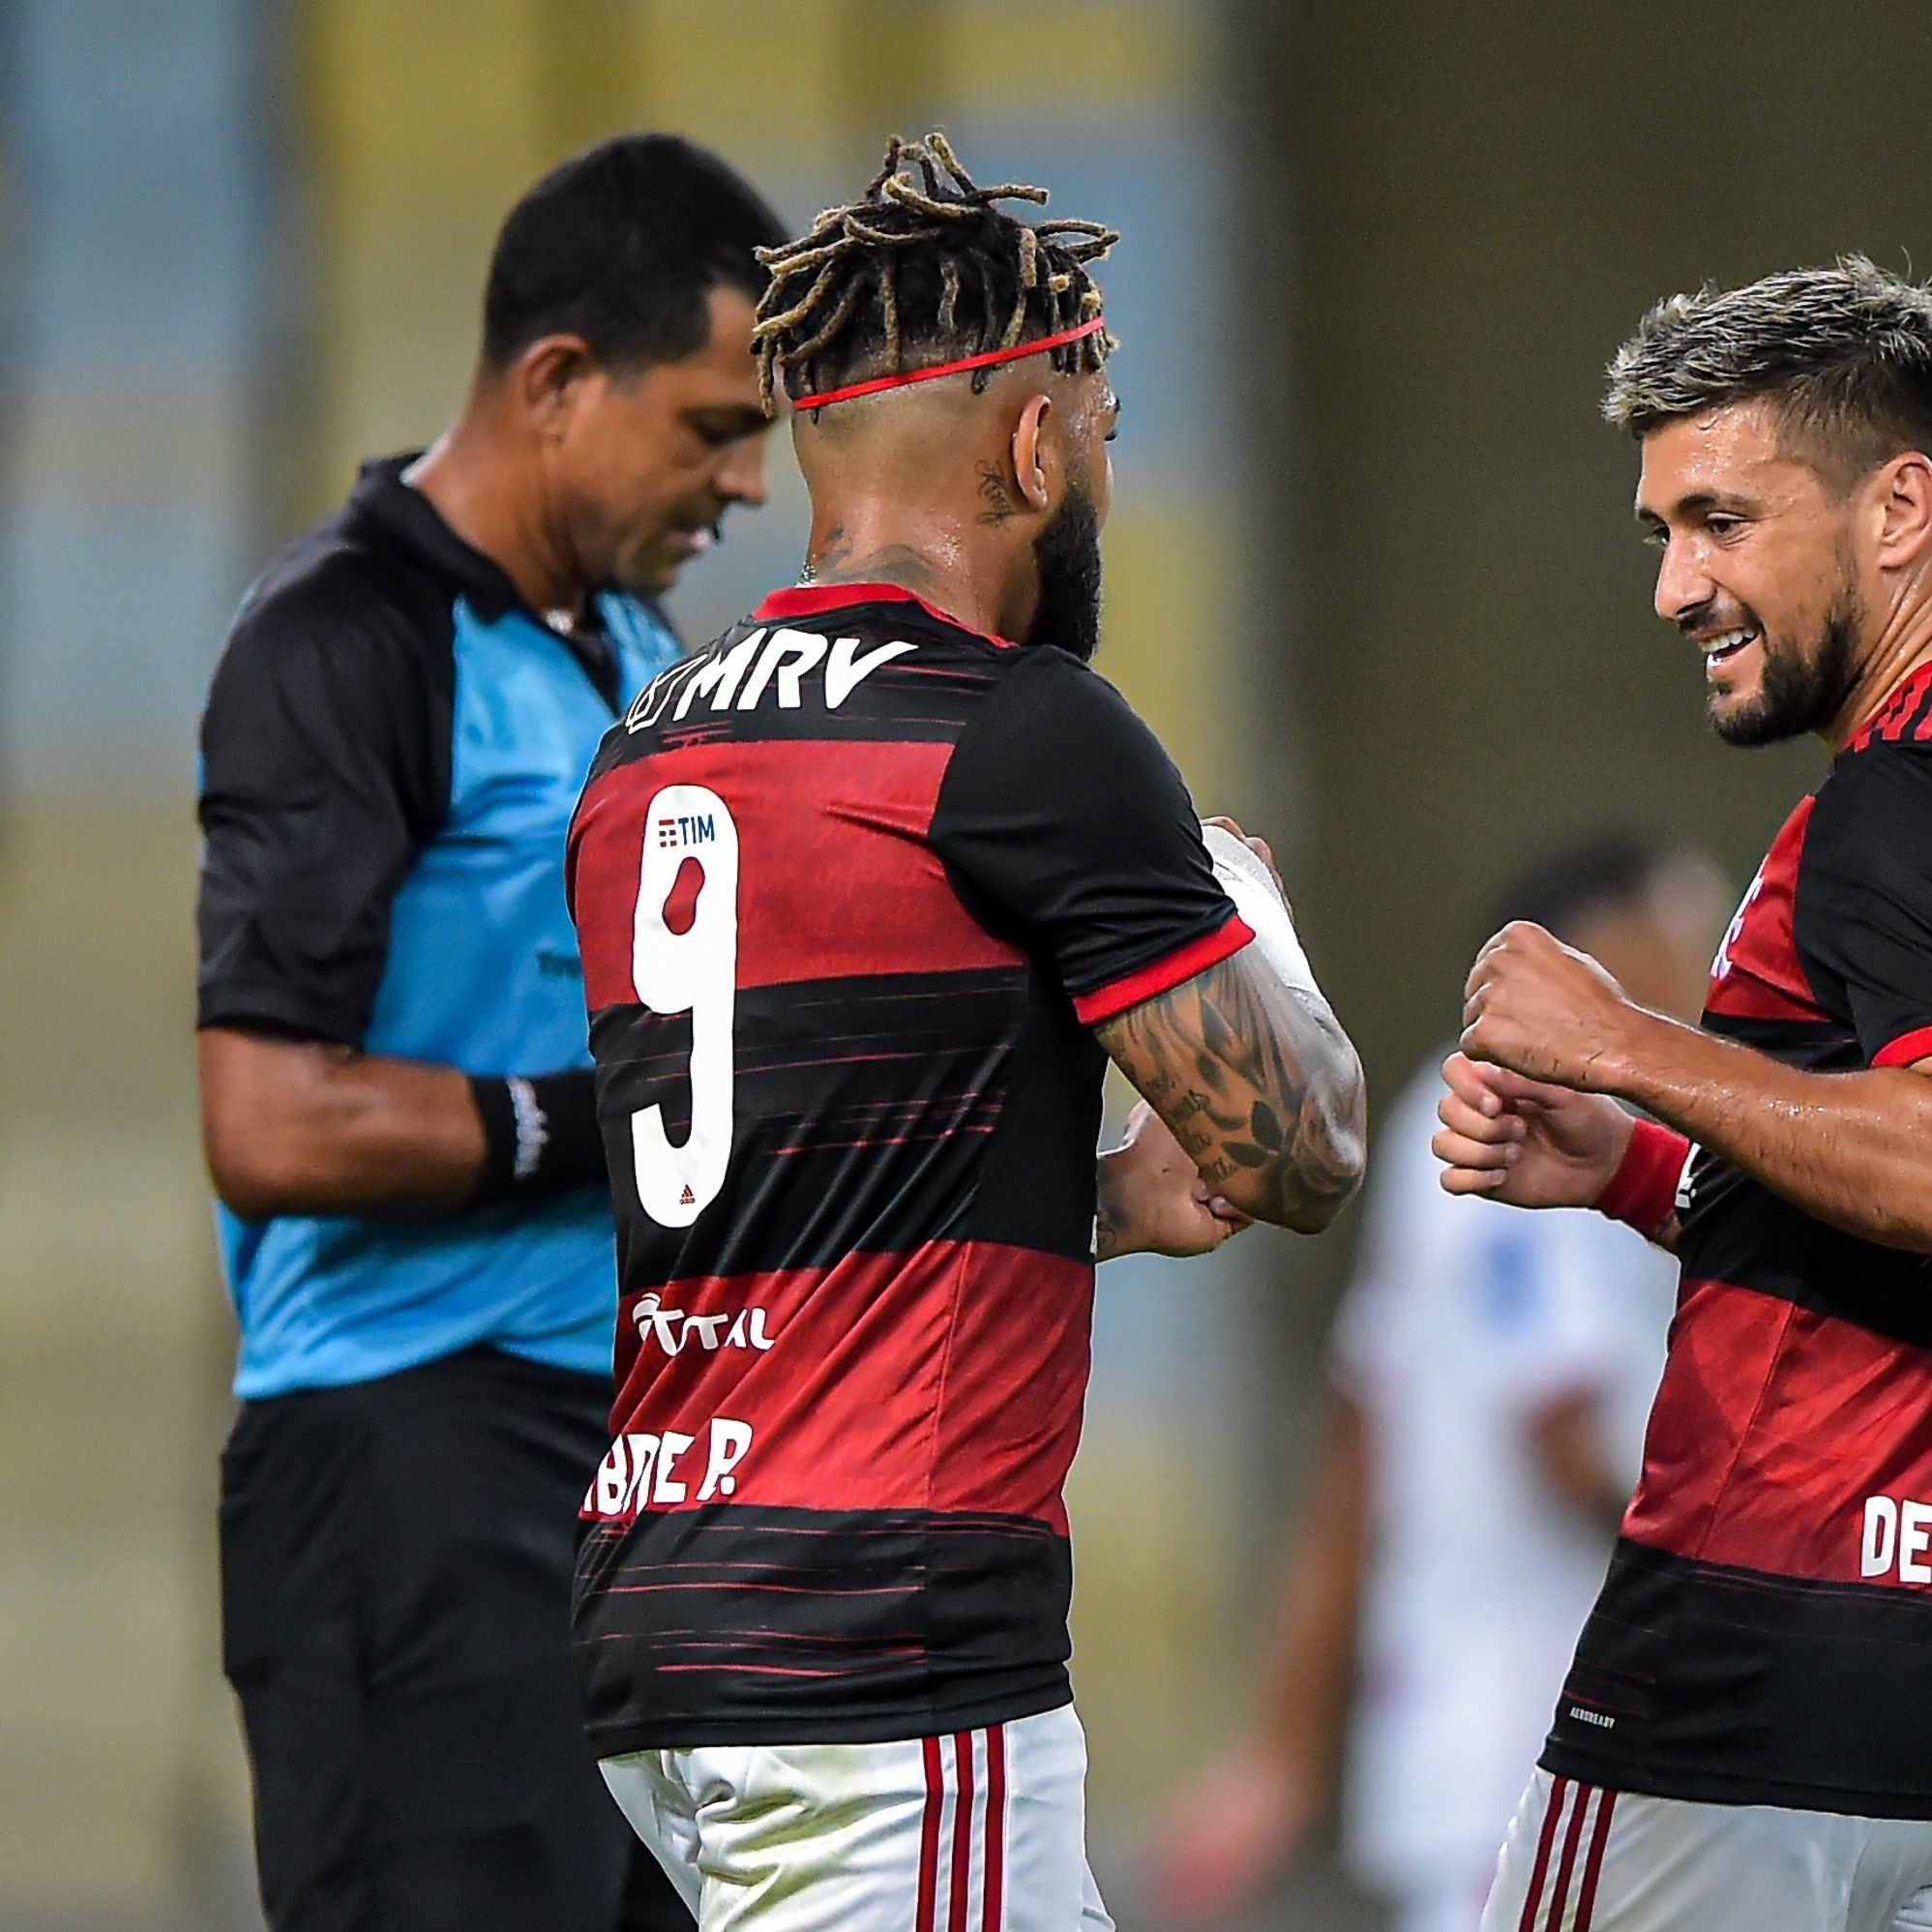 Globo evita se posicionar após Flamengo anunciar transmissão: 'Não